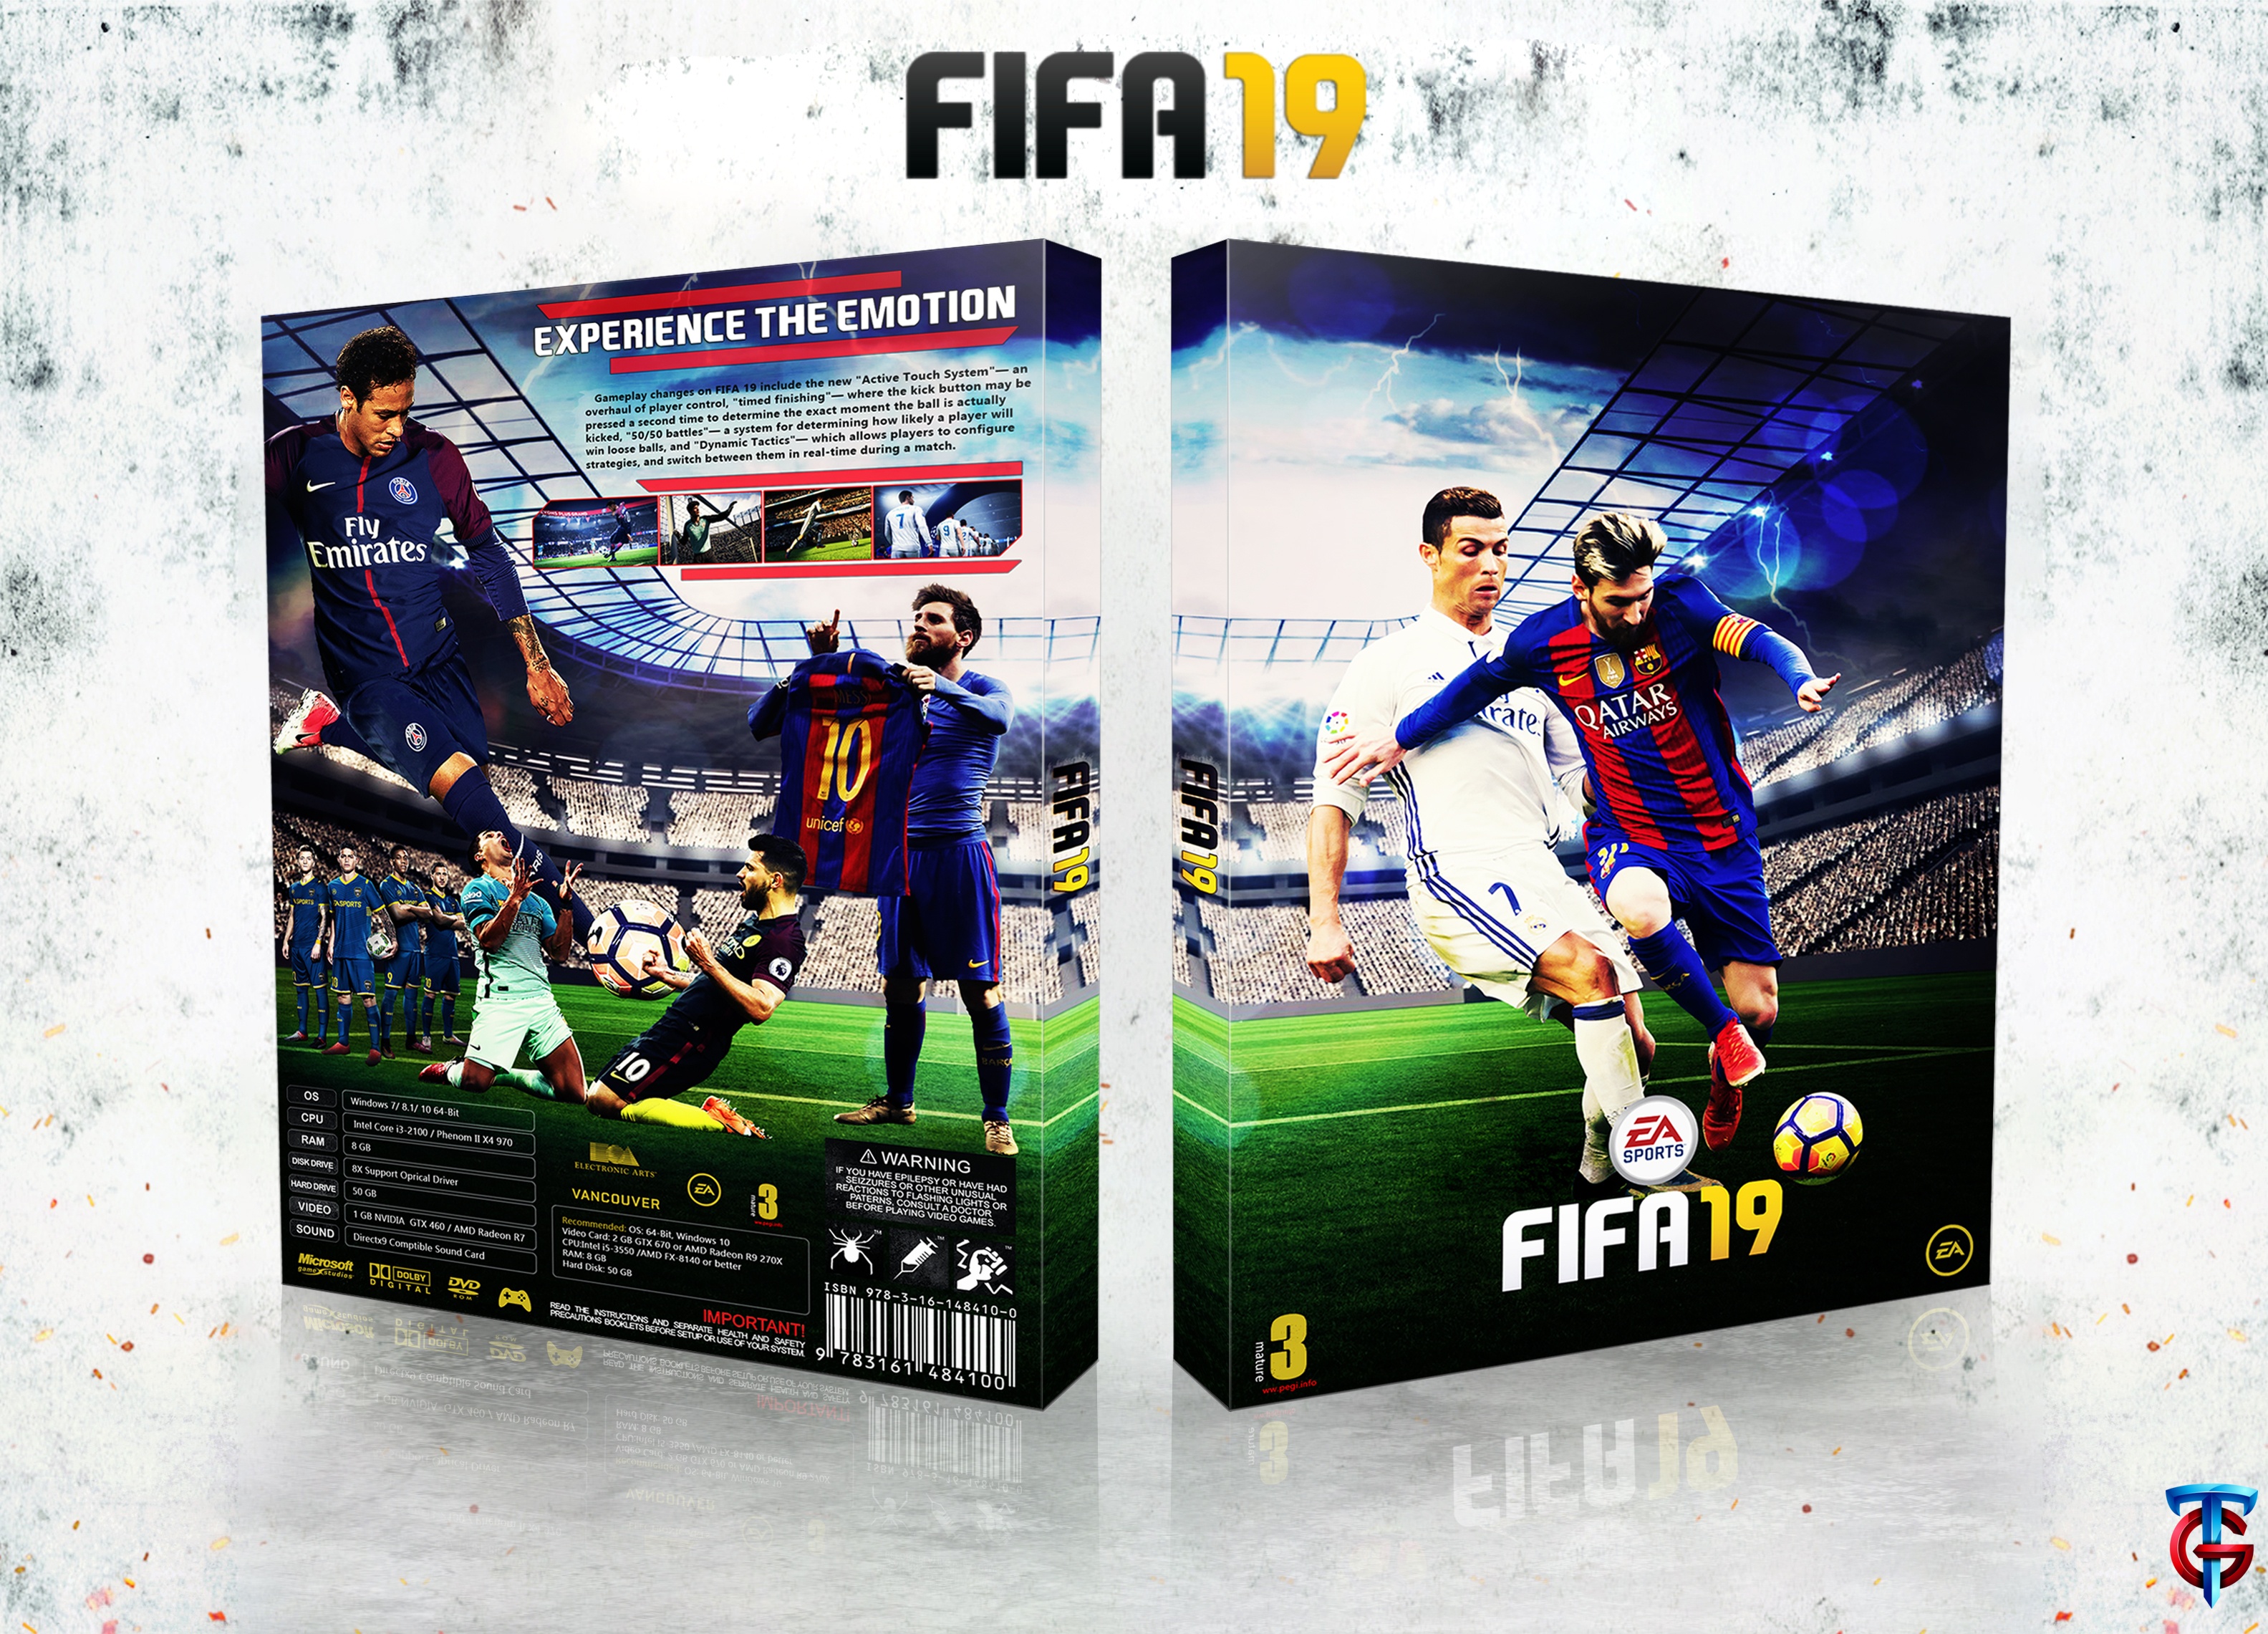 FIFA 19 box cover